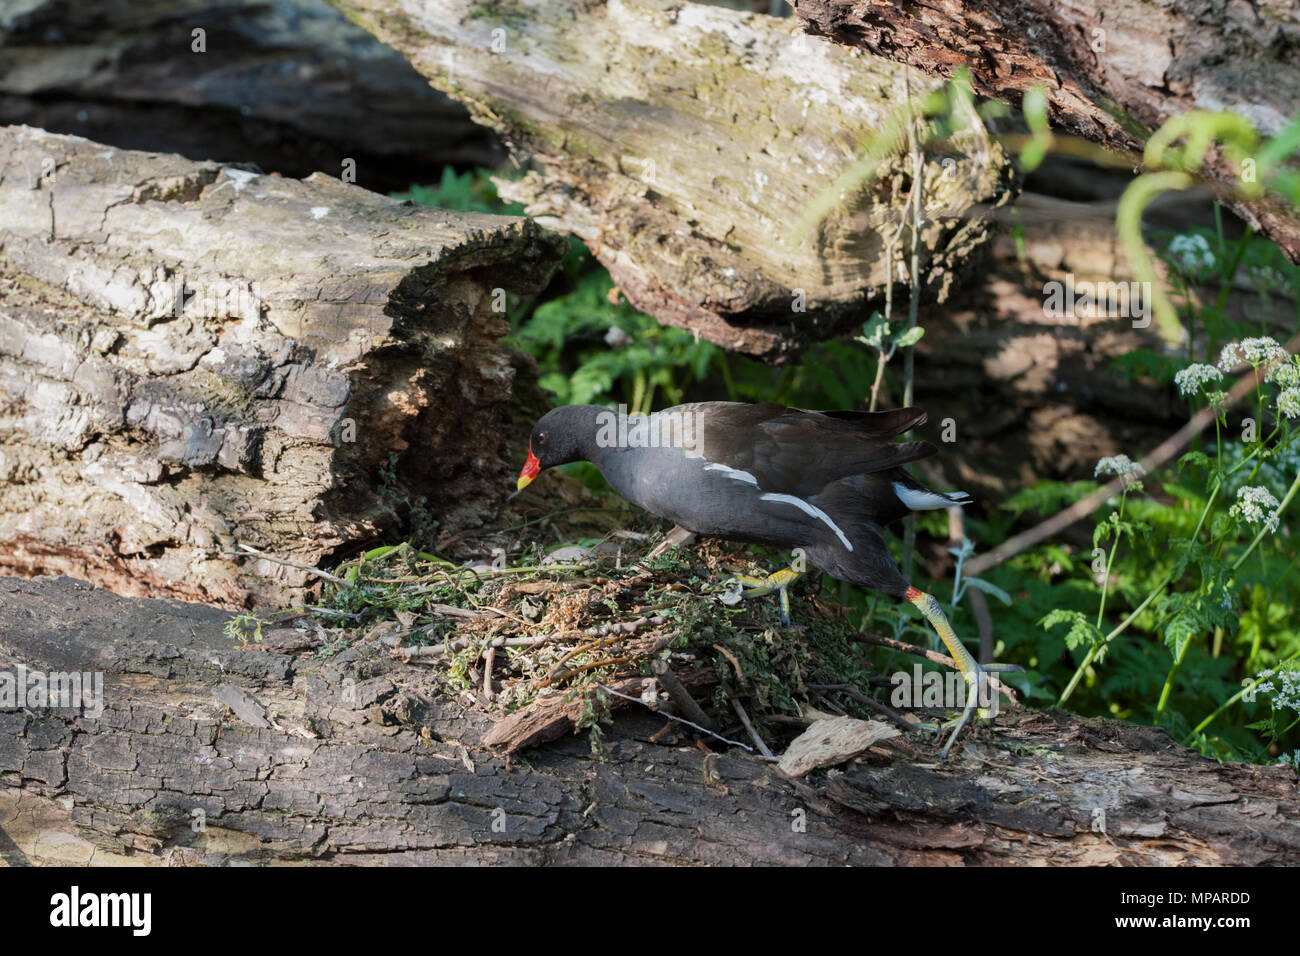 Nesting gemeinsame Sumpfhuhn, (Gallinula chloropus), kehrt ins Nest mit Eiern, Regents Canal, London, Großbritannien, Britische Inseln Stockfoto